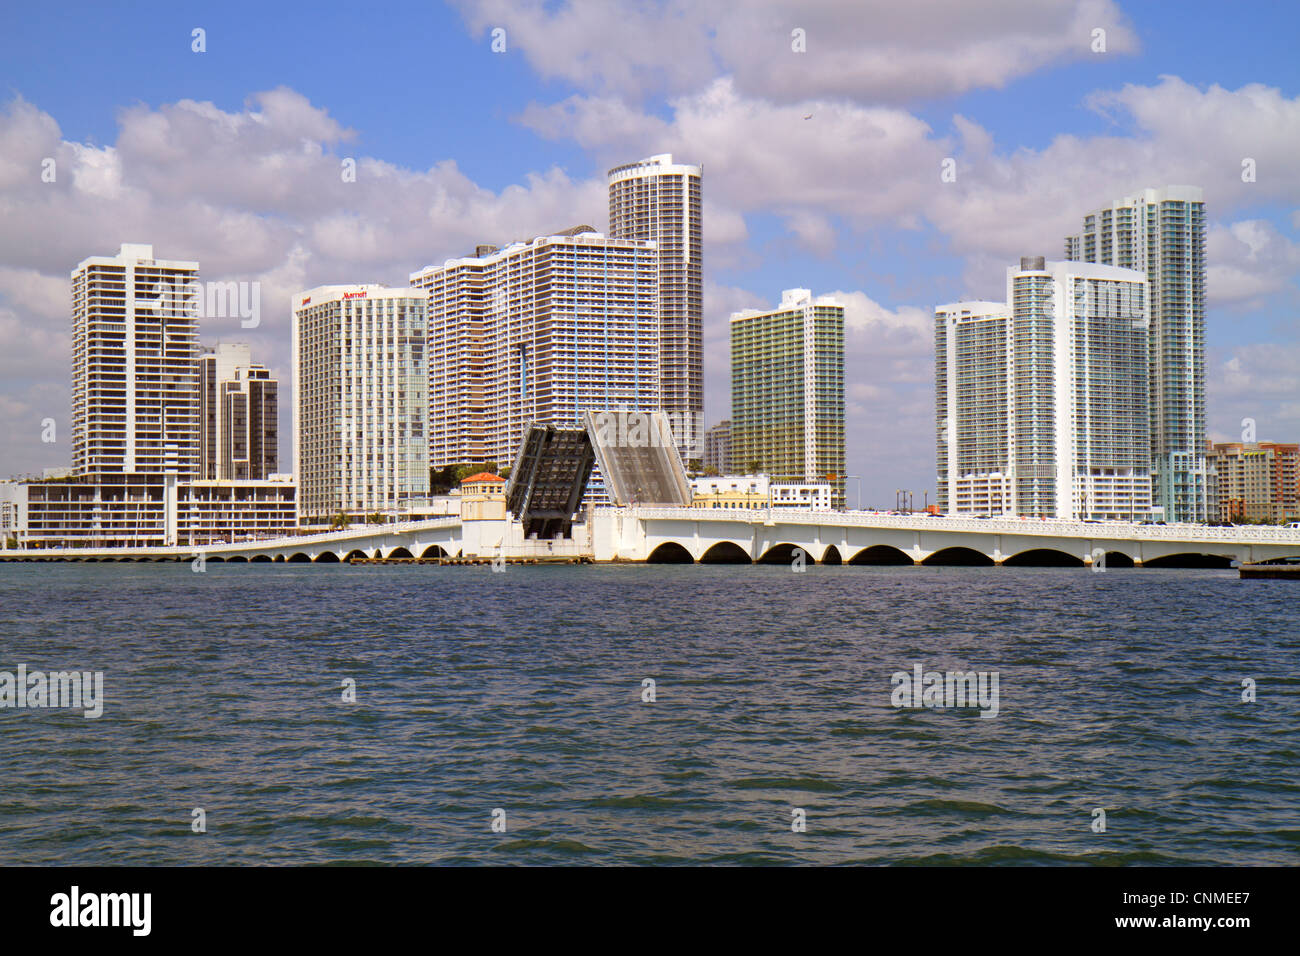 Miami Florida,Biscayne Bay,Venetian Causeway,ponte levatoio su,skyline del quartiere Omni,Edgewater,grattacieli alti grattacieli costruire edifici con Foto Stock